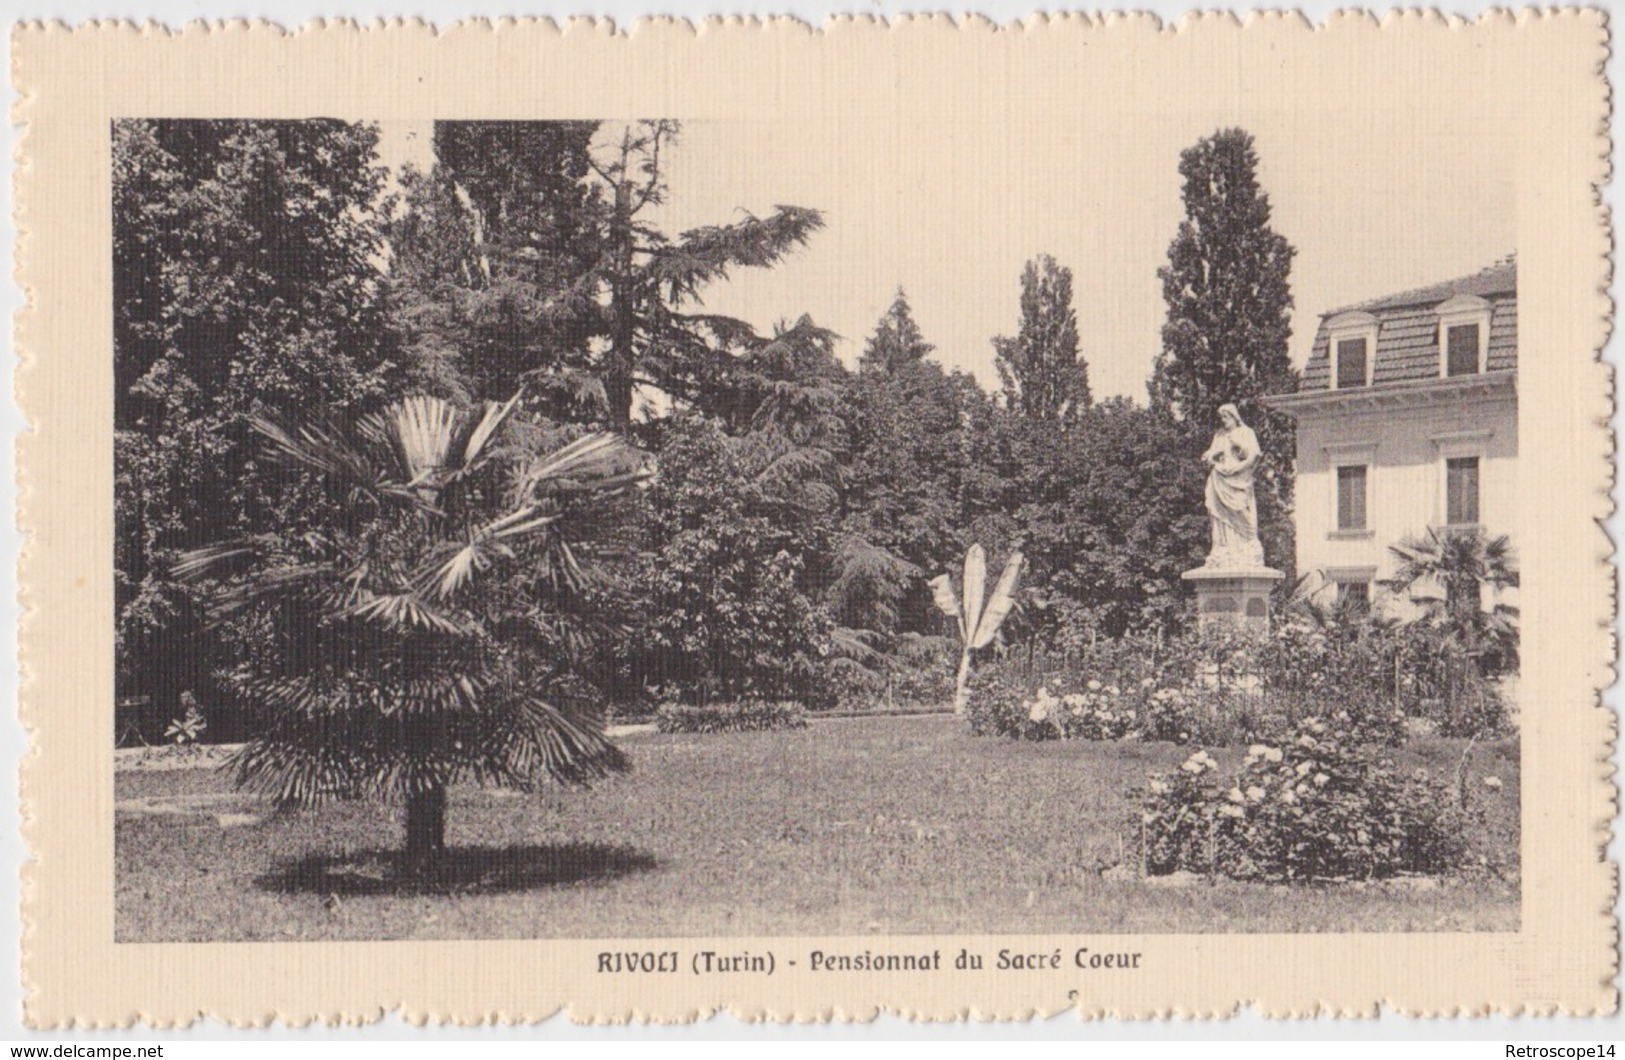 CPA Cartolina Postale, RIVOLI, SACRO CUORE, GIARDINO. 1910 Ca. Torino, Torinese, Piemonte. Piemont, Italie. - Rivoli